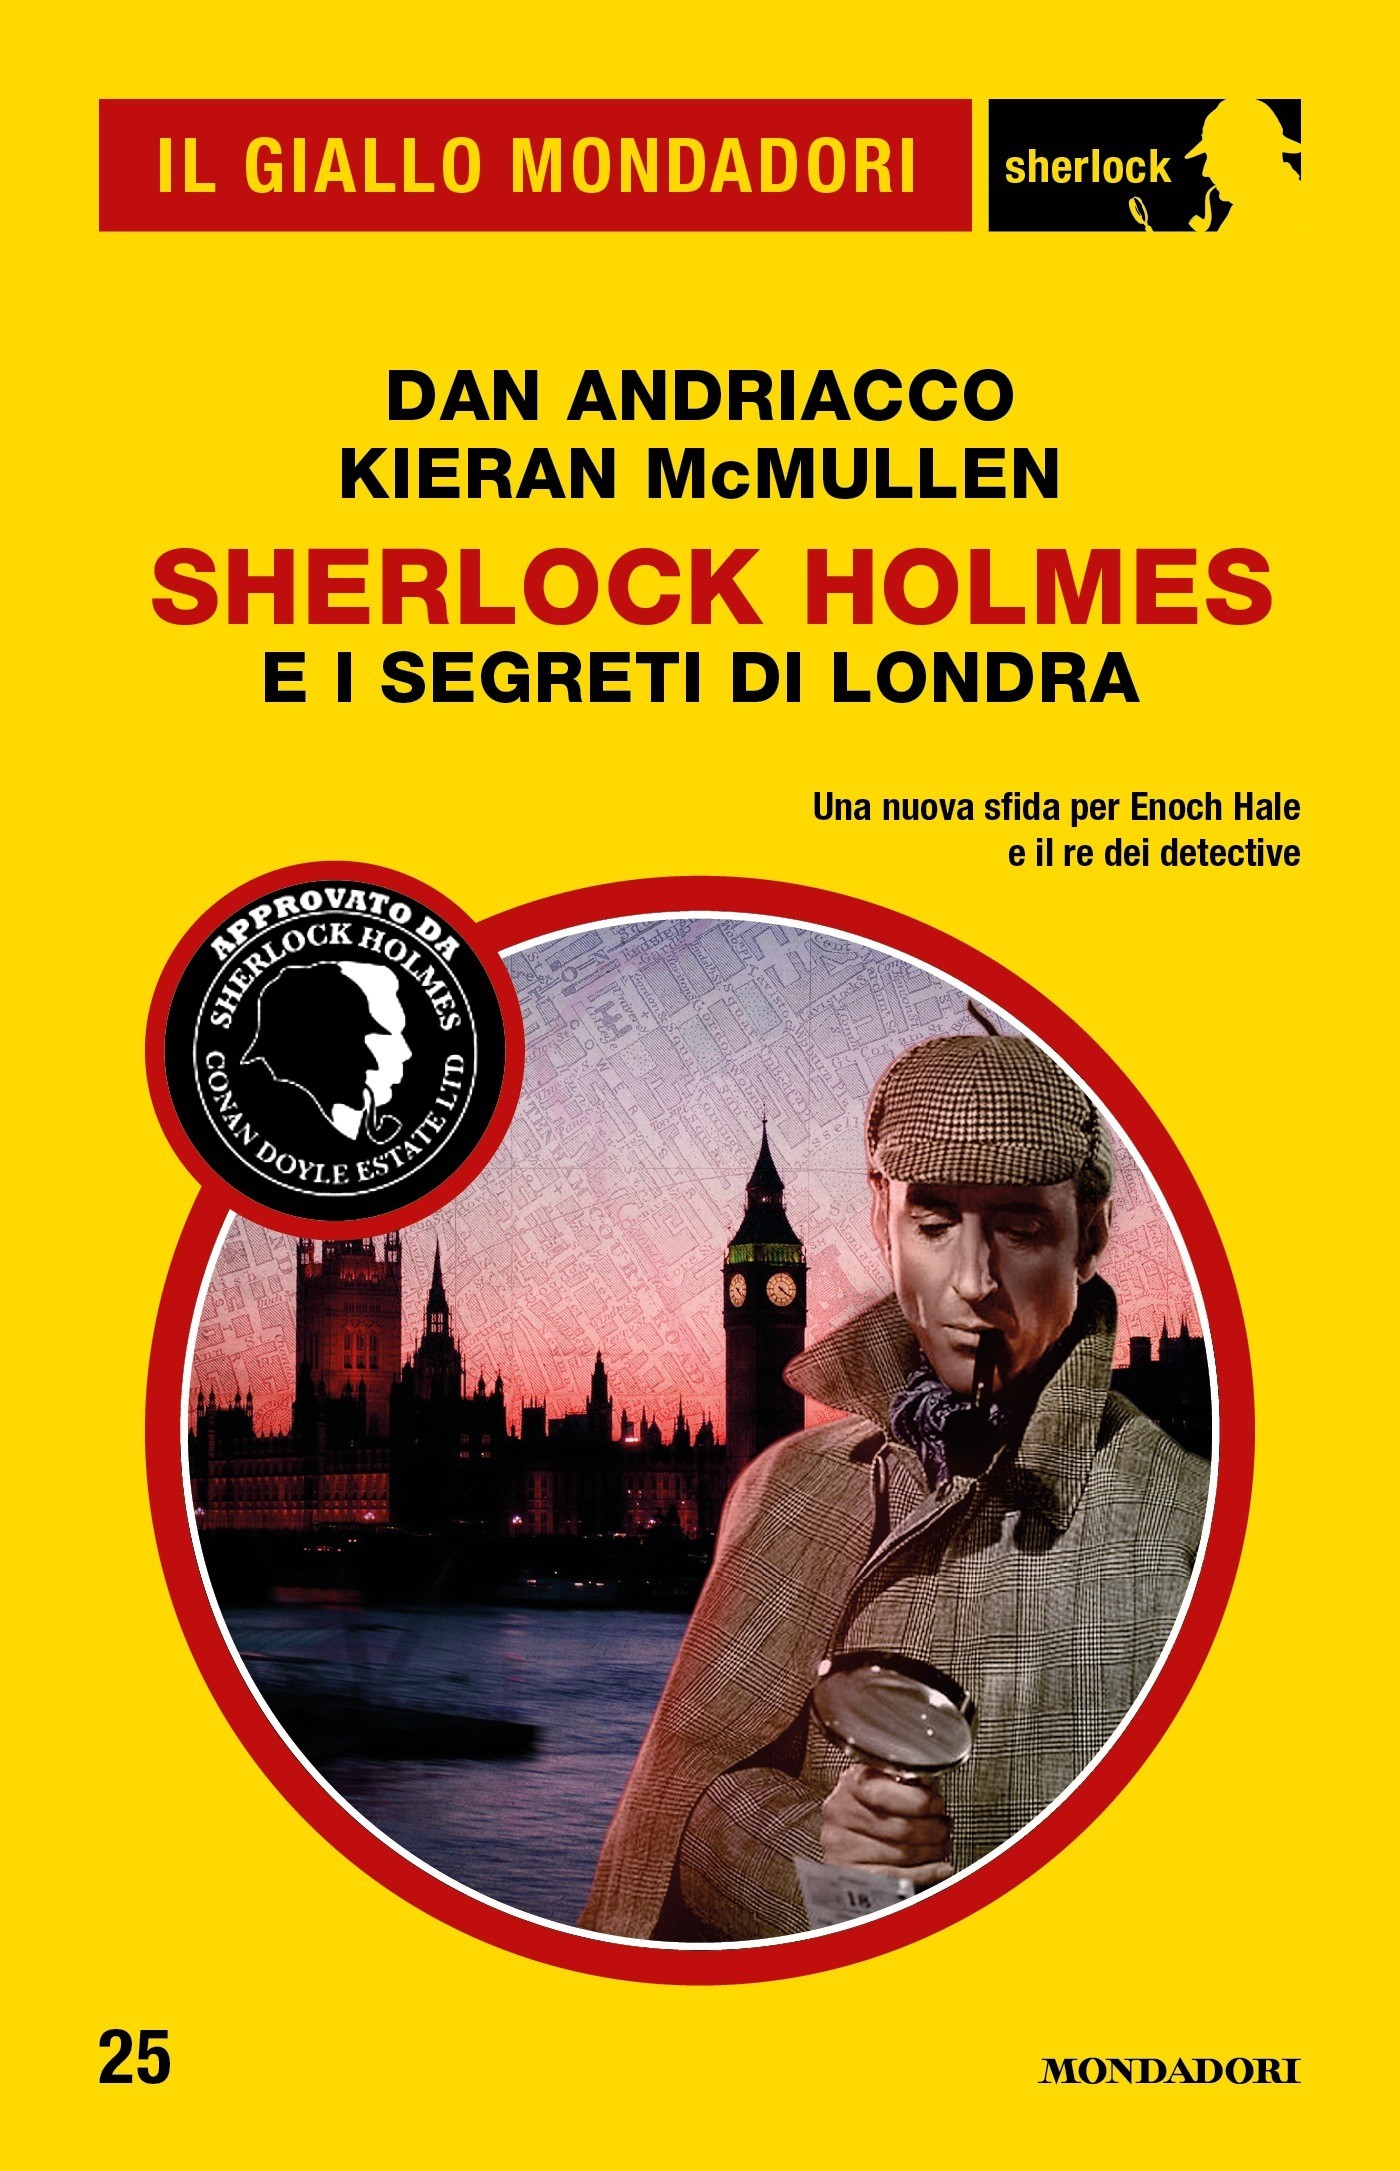 Sherlock Holmes e i segreti di Londra (Il Giallo Mondadori Sherlock) - Librerie.coop